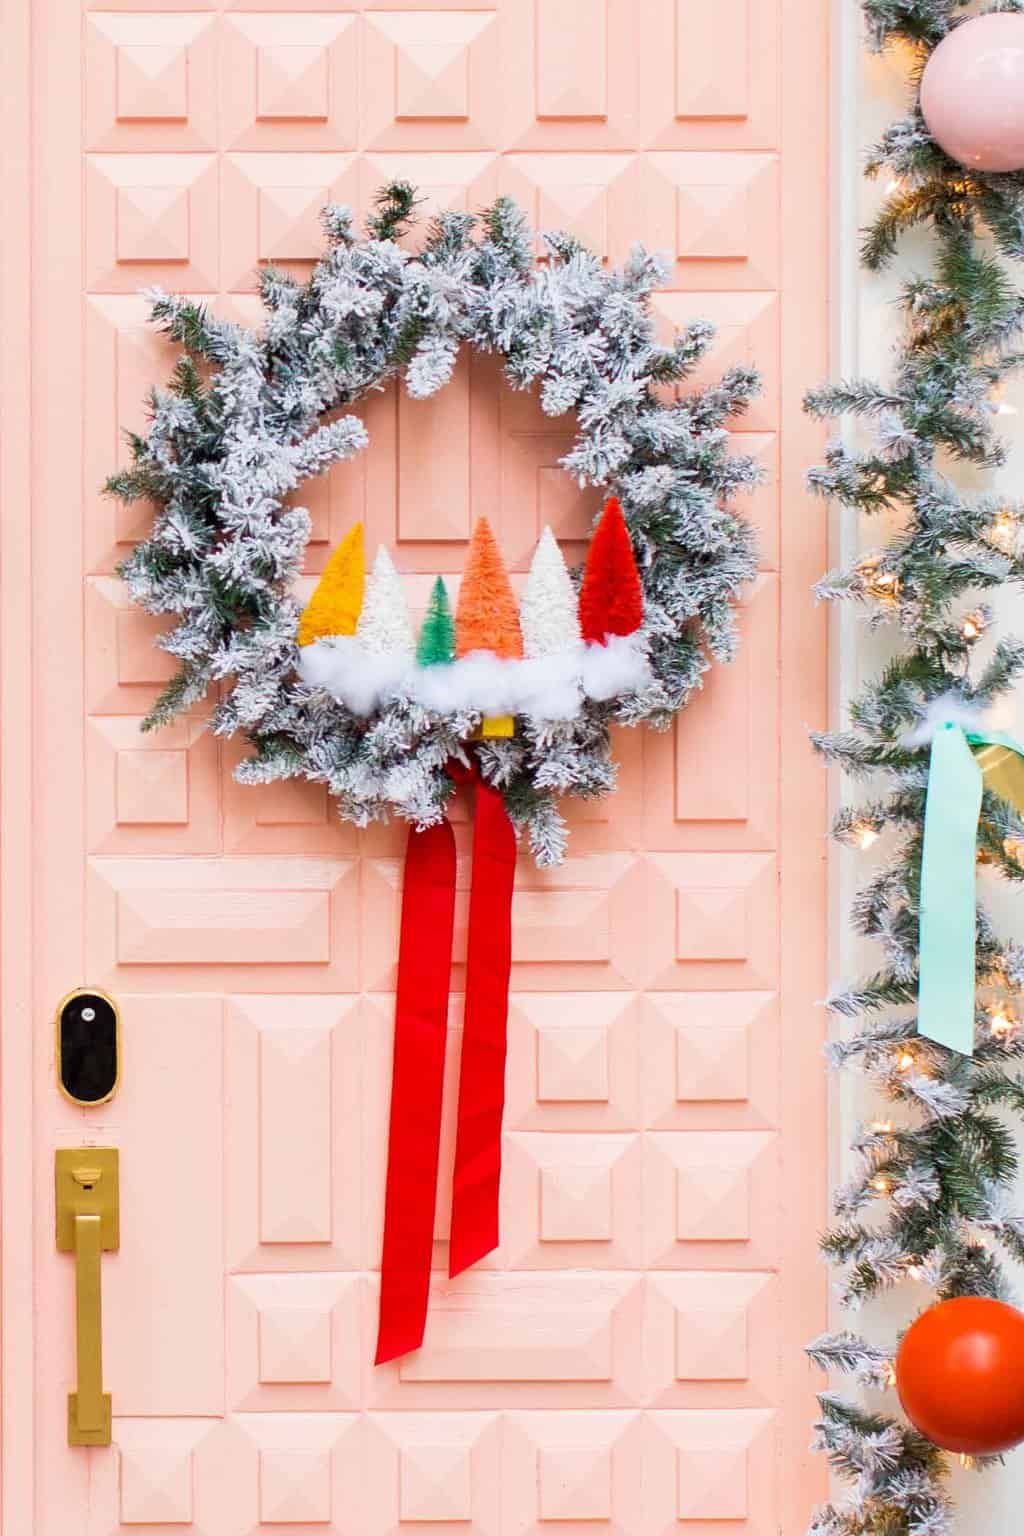 Christmas Door Decor for Your Holiday Home - Mod Podge Rocks